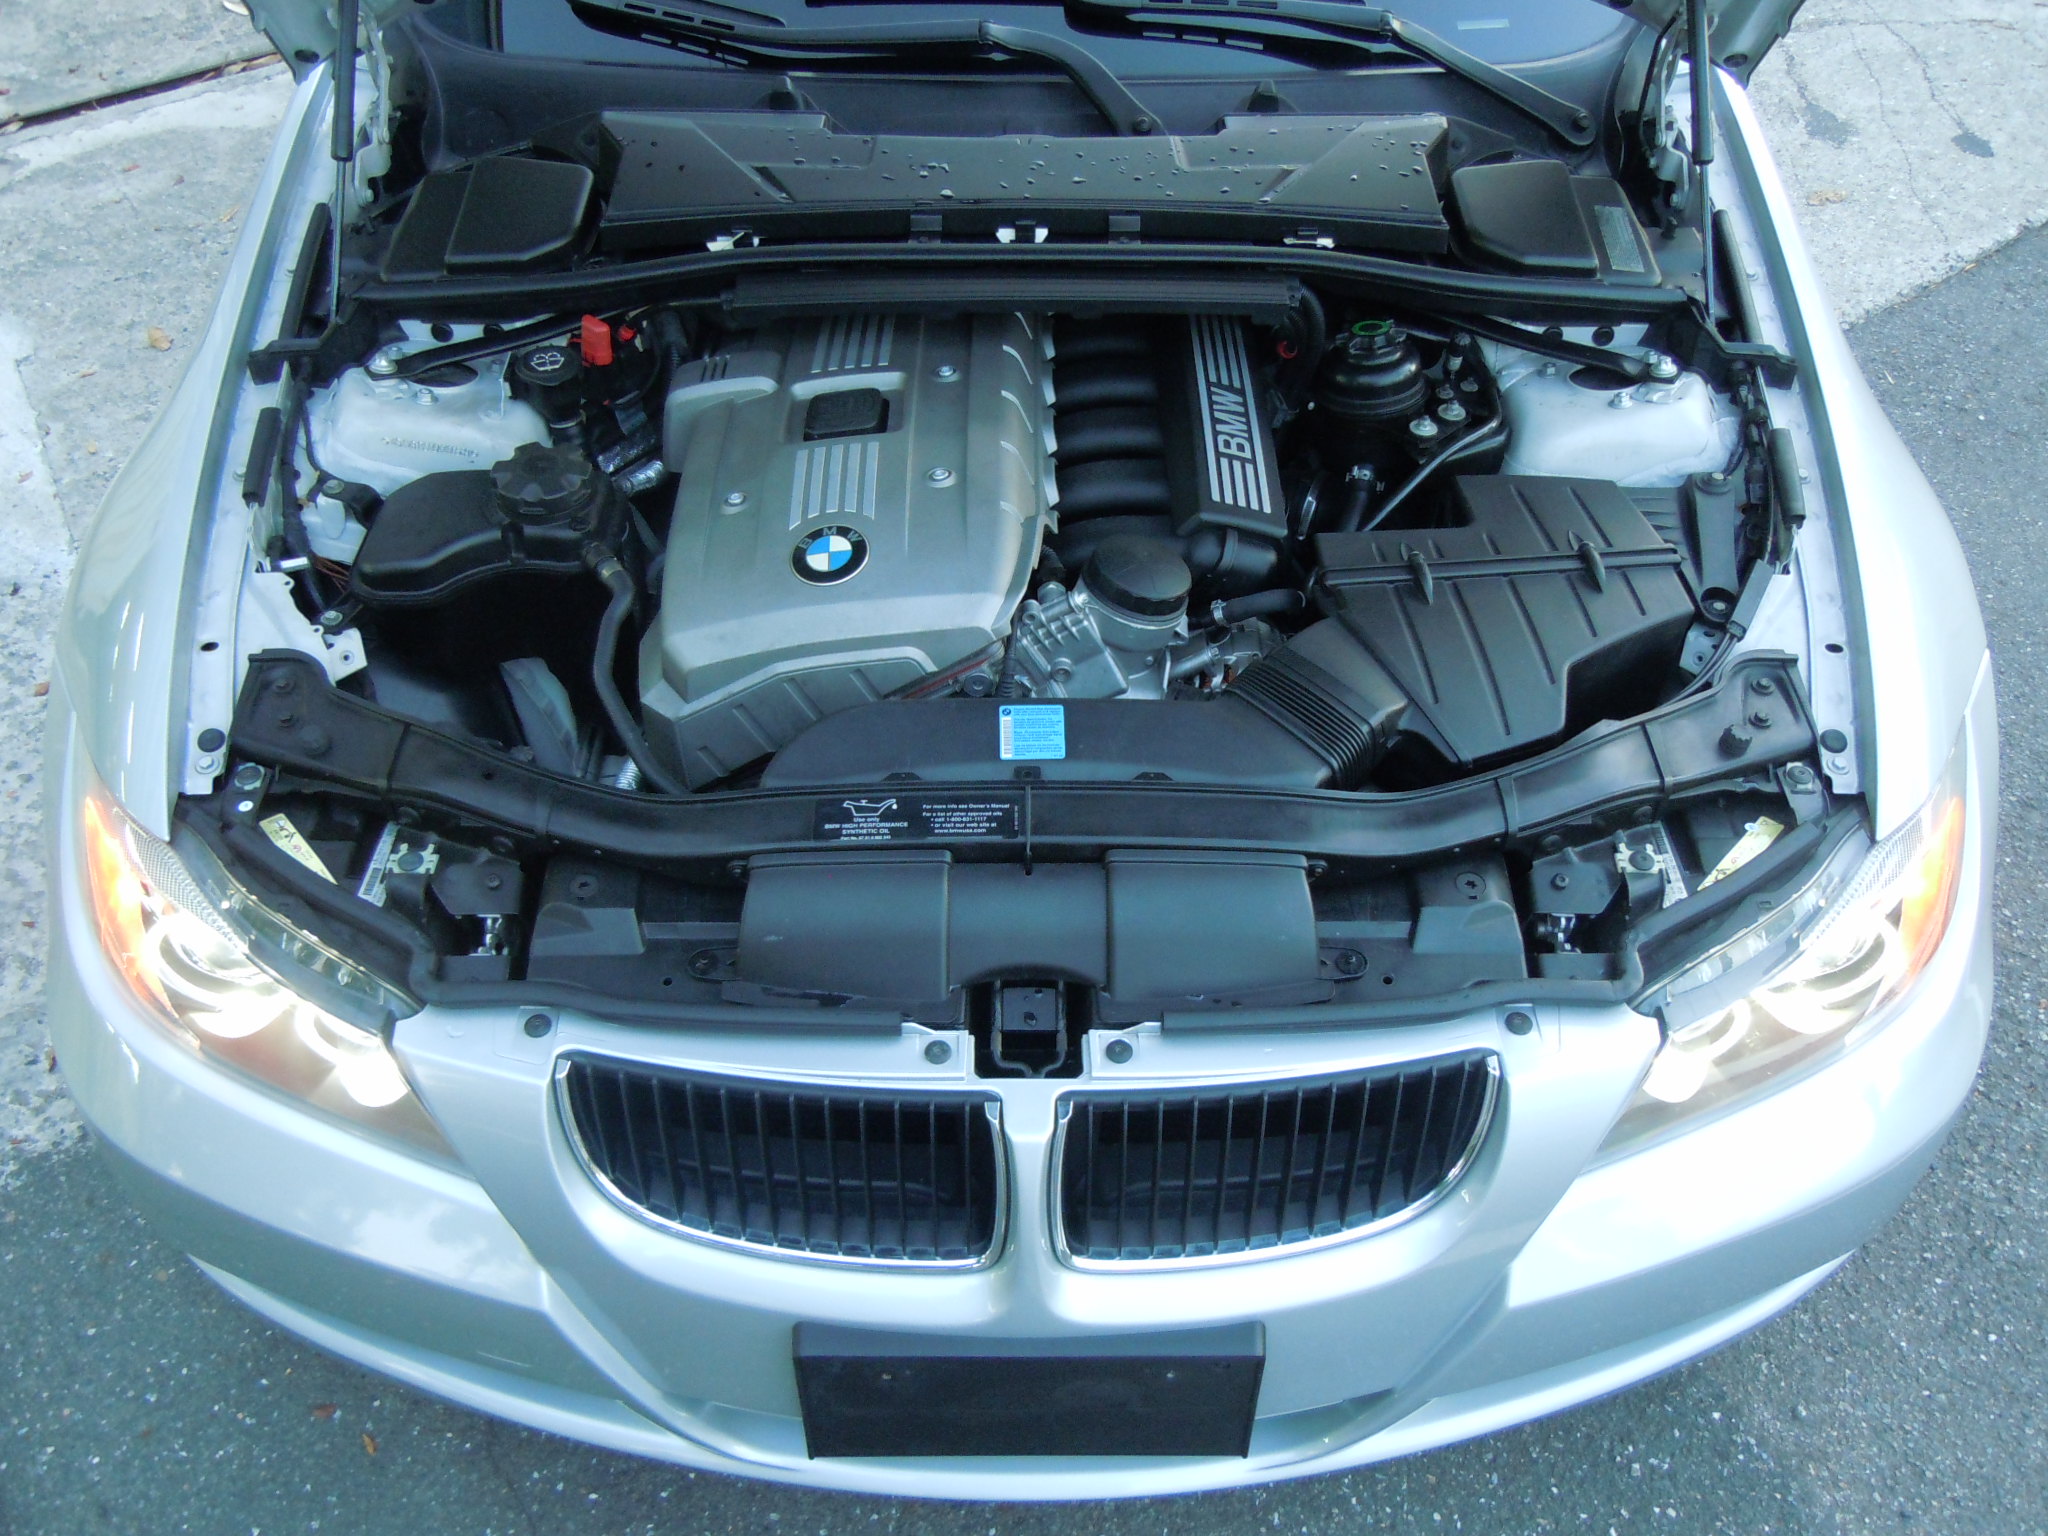 [買車王] 2006 BMW 325i 選配原廠大螢幕 iDrive 自動轉向遠近HID頭燈全車歐洲車容易壞的零件已全更新提供其他車商不敢做的優質保固 - 20160916165955-17439918.JPG(圖)